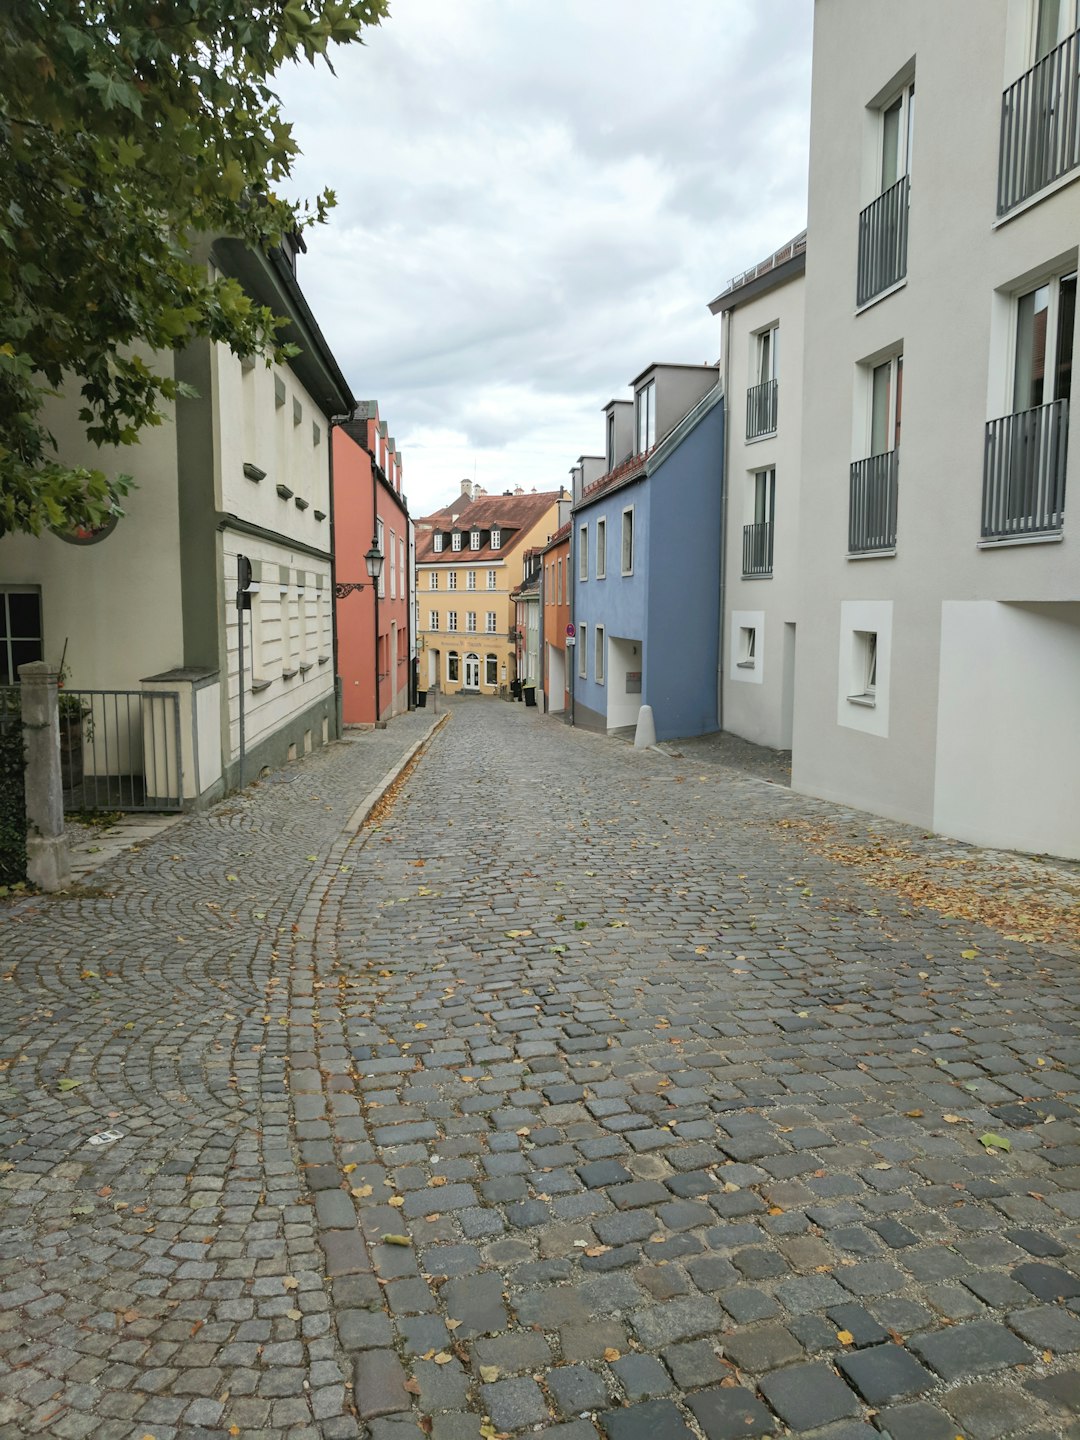 Town photo spot Dachau Regensburg